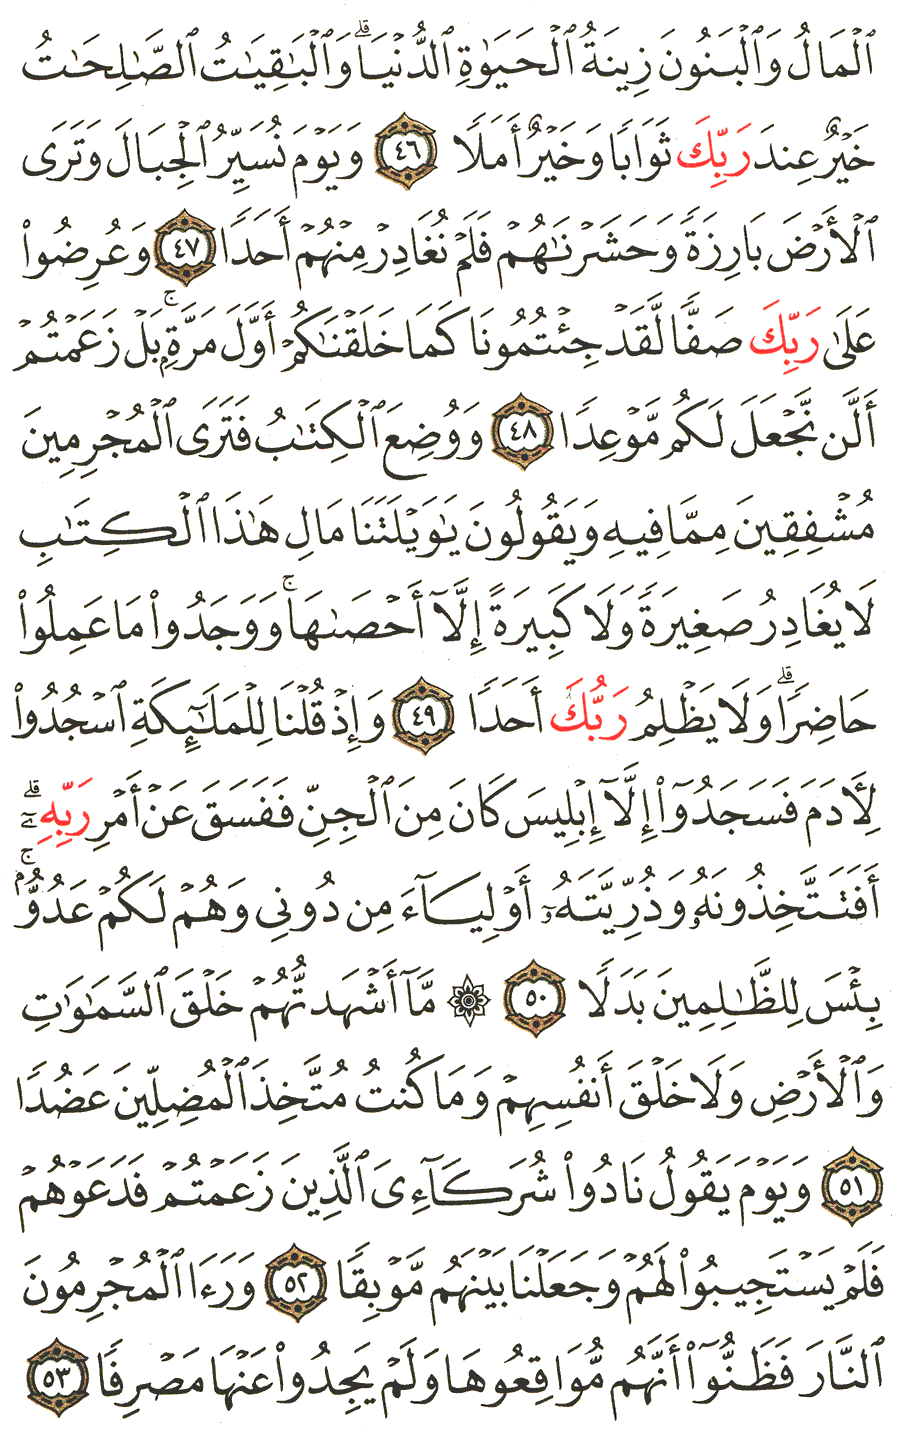 الصفحة رقم 299  من القرآن الكريم مكتوبة من المصحف